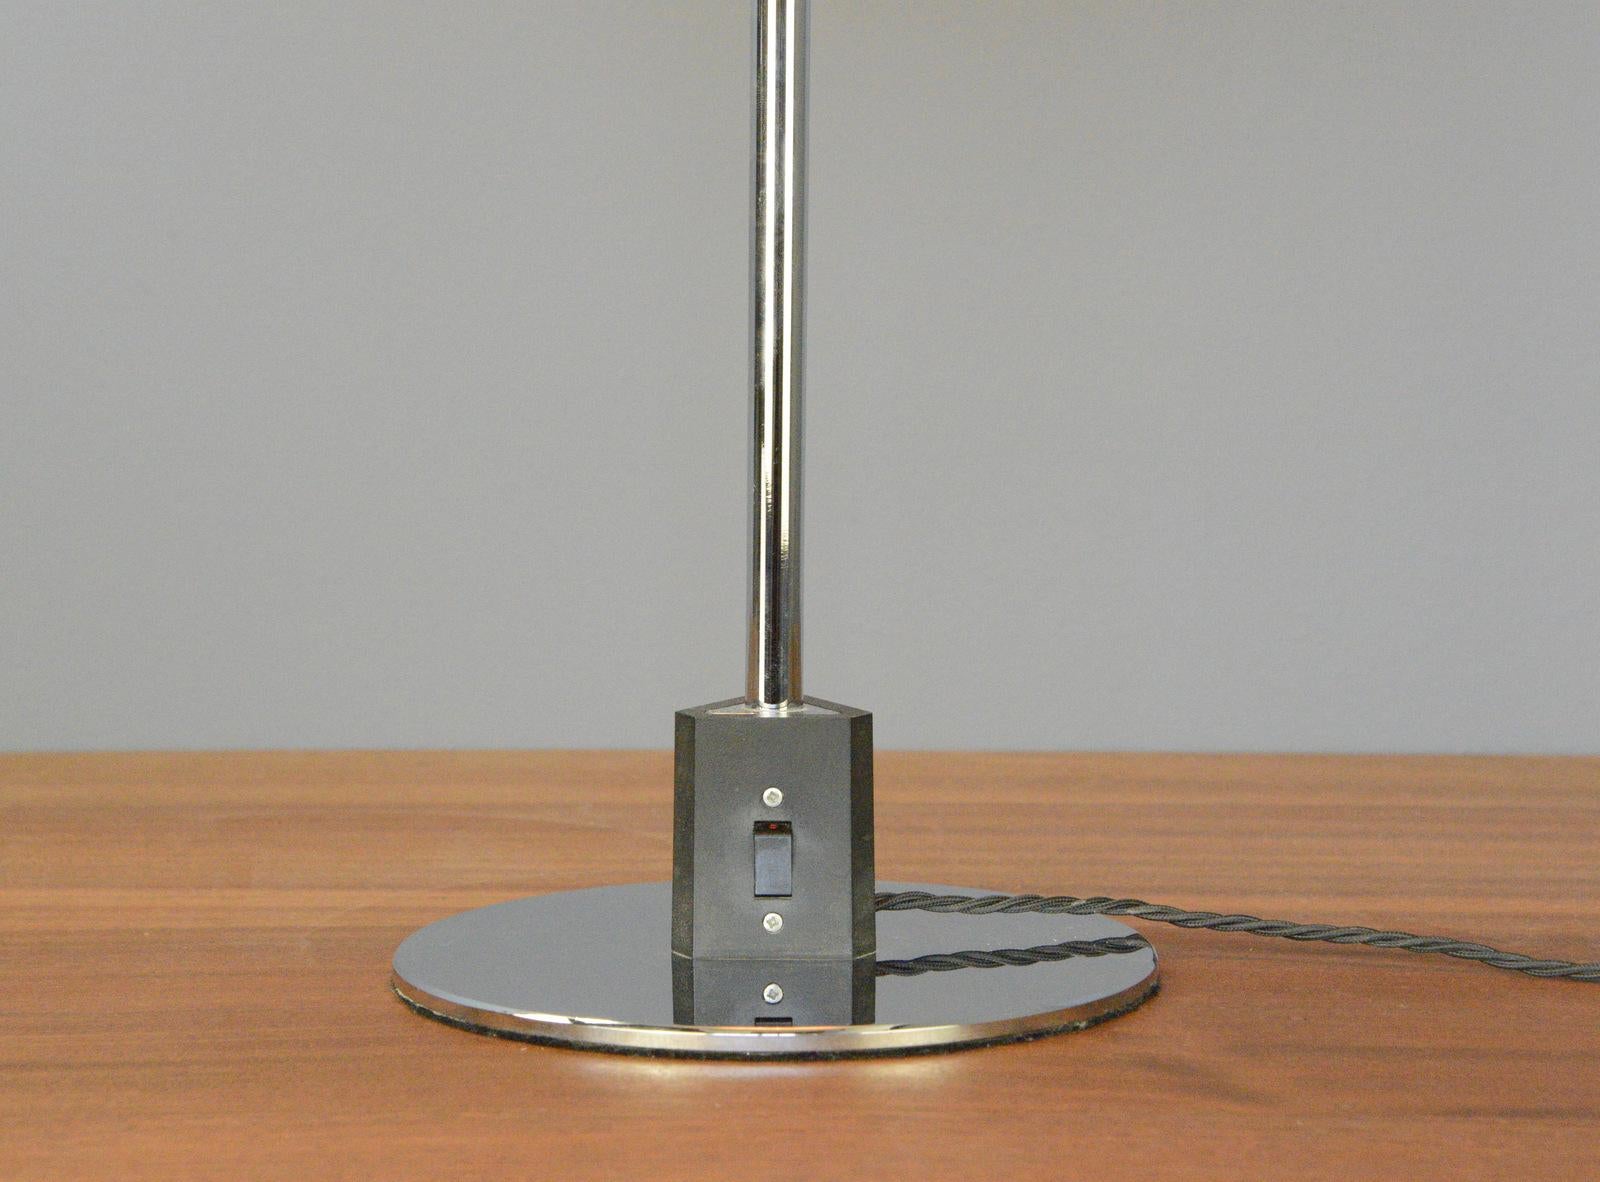 Tischlampe Modell 4/3 von Louis Poulsen, ca. 1960er Jahre (Skandinavische Moderne)